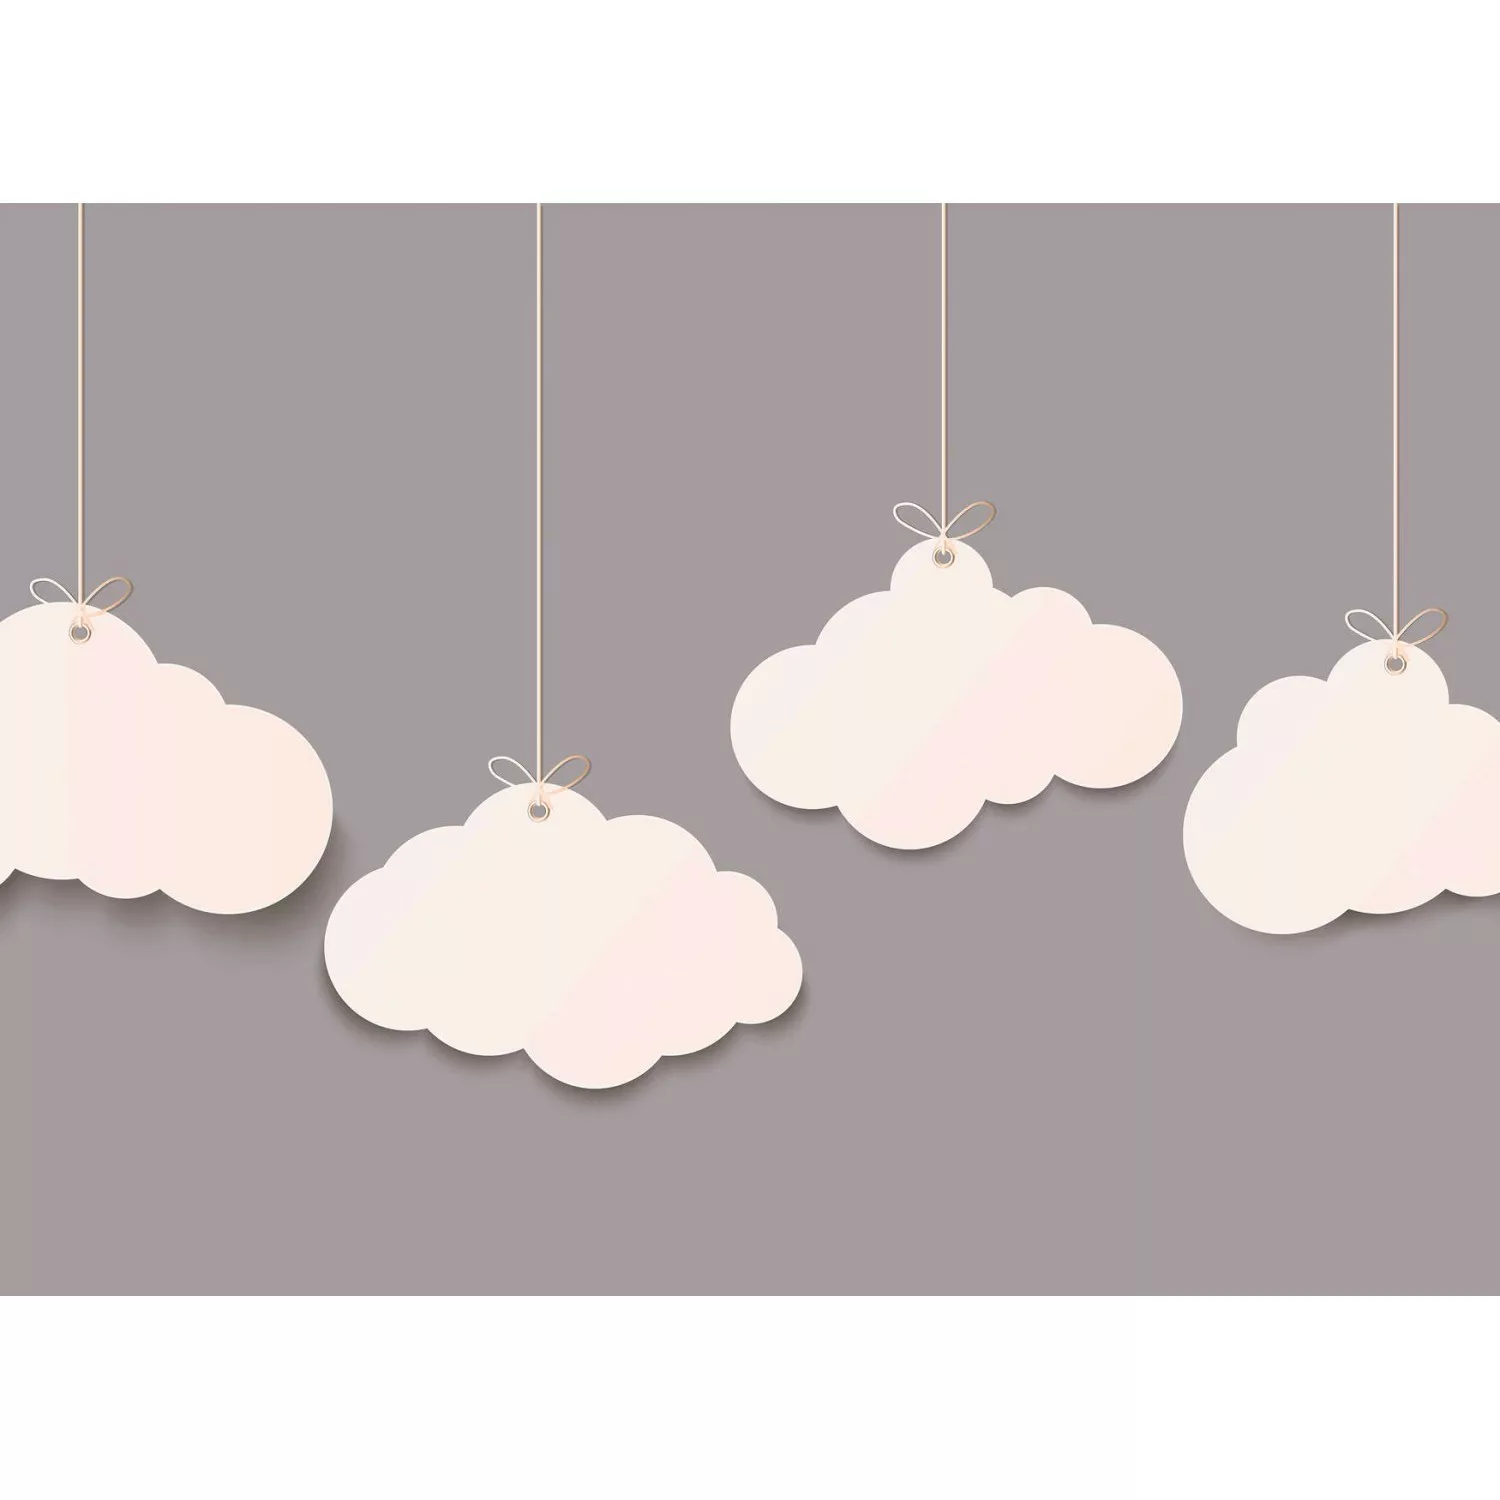 Fototapete Grafik Wolken Himmel Grau Weiß 3,50 m x 2,55 m FSC® günstig online kaufen